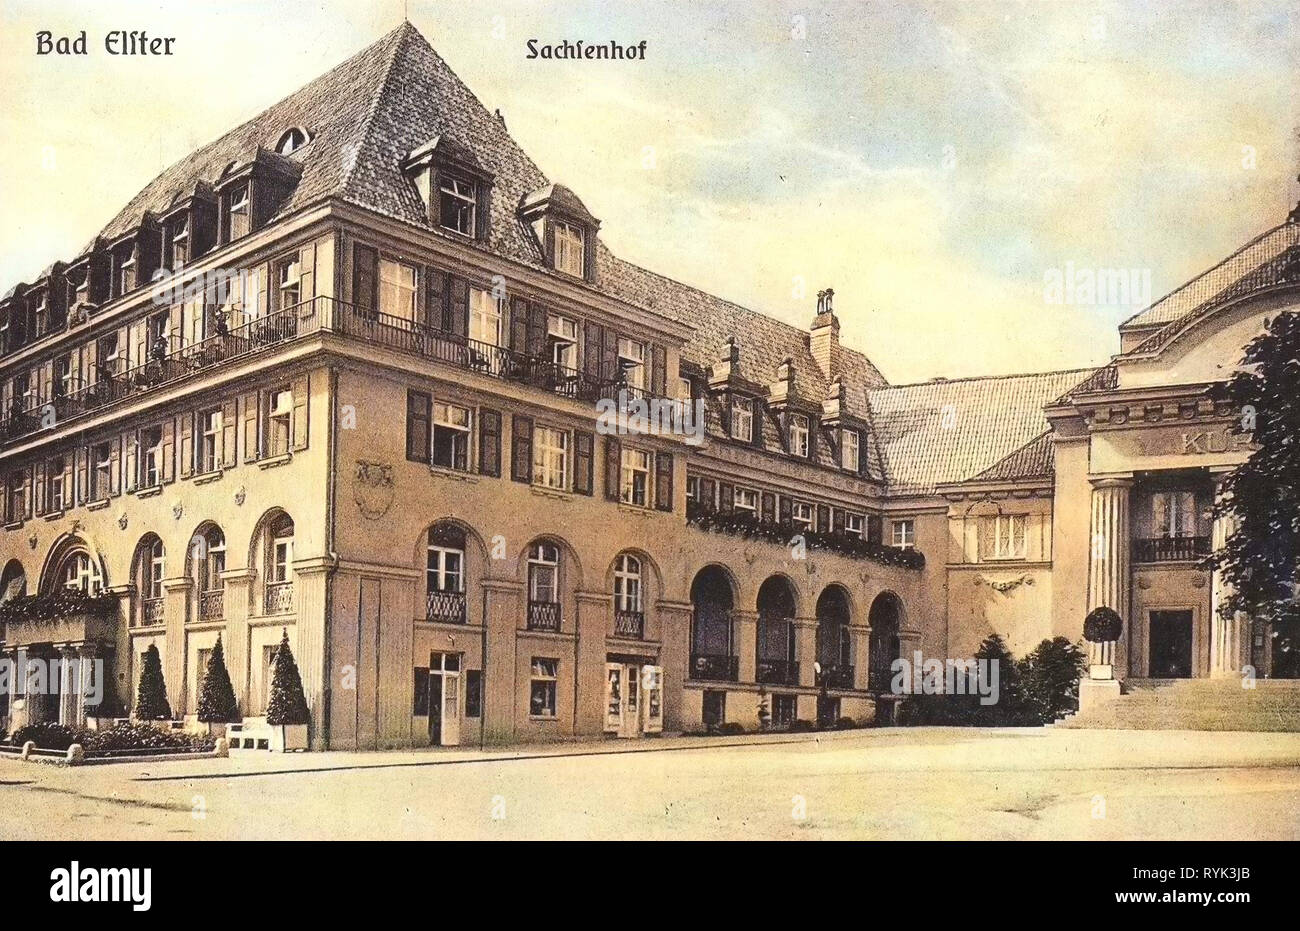 Bâtiments de Bad Elster, bâtiments Spa en Saxe, Théâtre de l'Allemagne, 1914, Vogtlandkreis, Bad Elster, Sachsenhof Banque D'Images